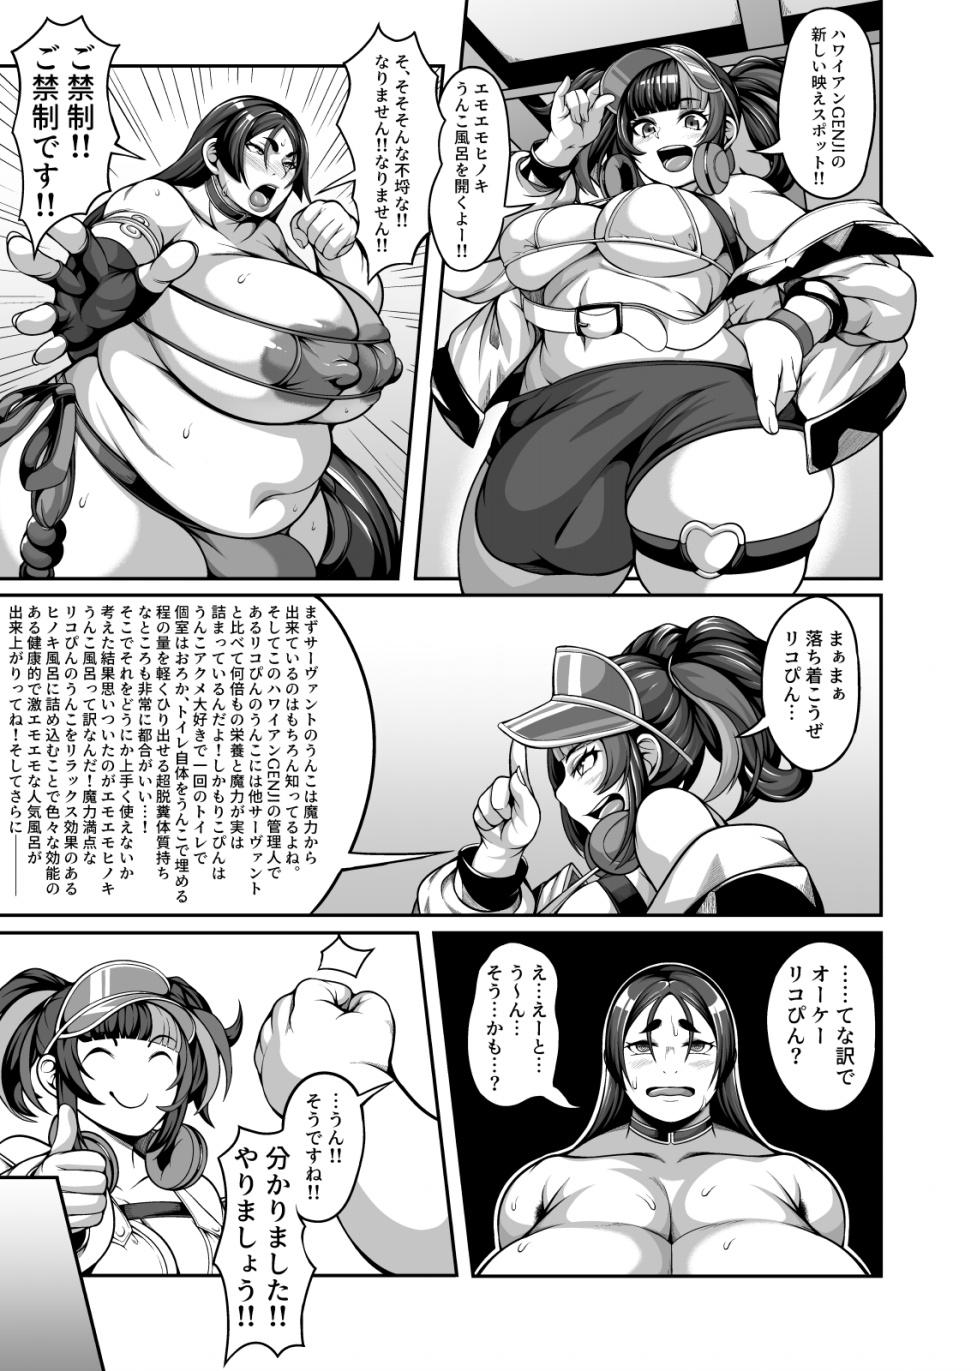 Fun Raikou Maman VS VOL.1 - Fate grand order Chastity - Page 11